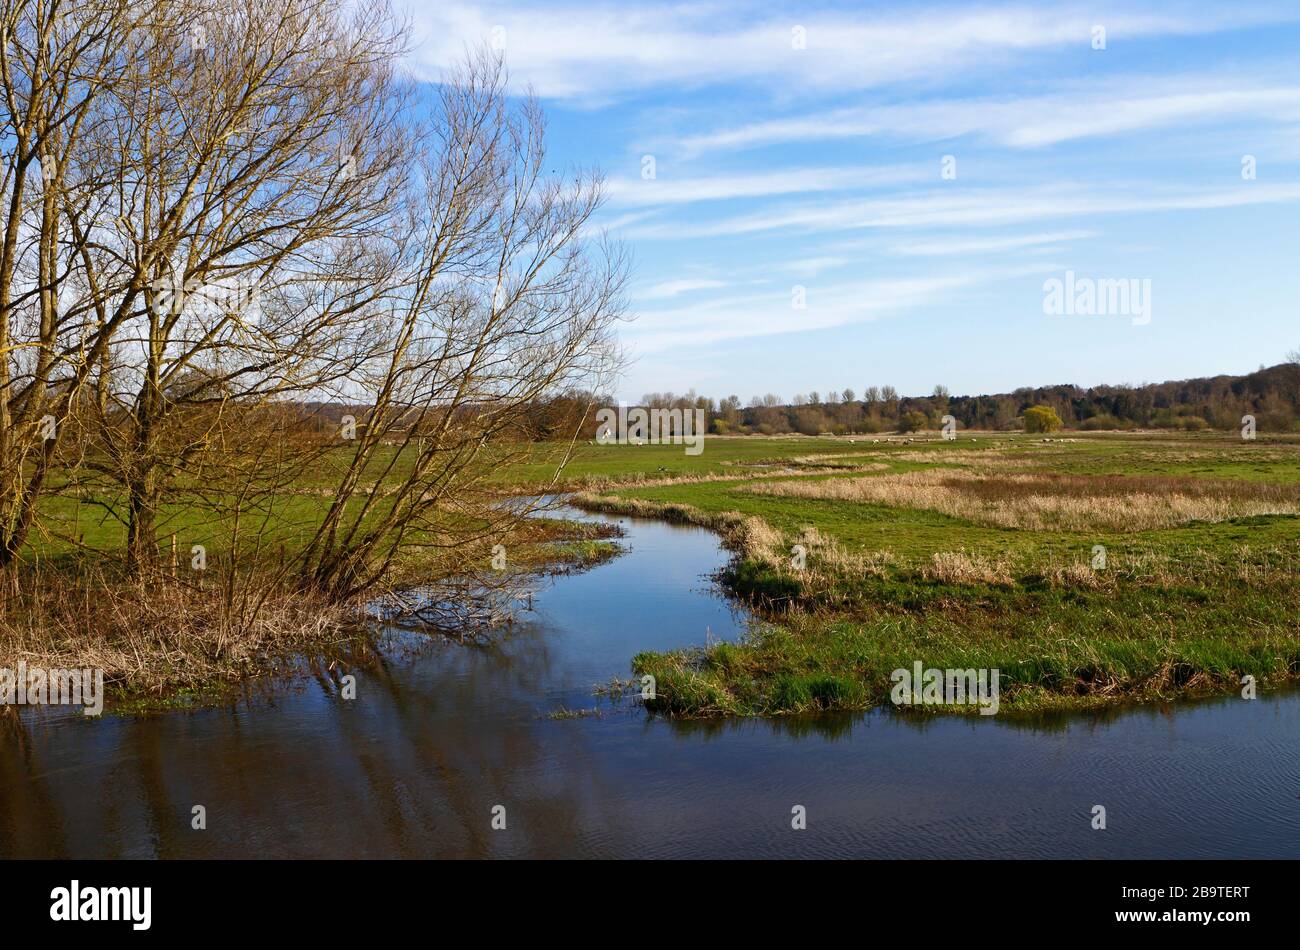 Une digue de drainage qui traverse des marais de pâturage avec du bétail dans la rivière Wensum à Ringland, Norfolk, Angleterre, Royaume-Uni, Europe. Banque D'Images